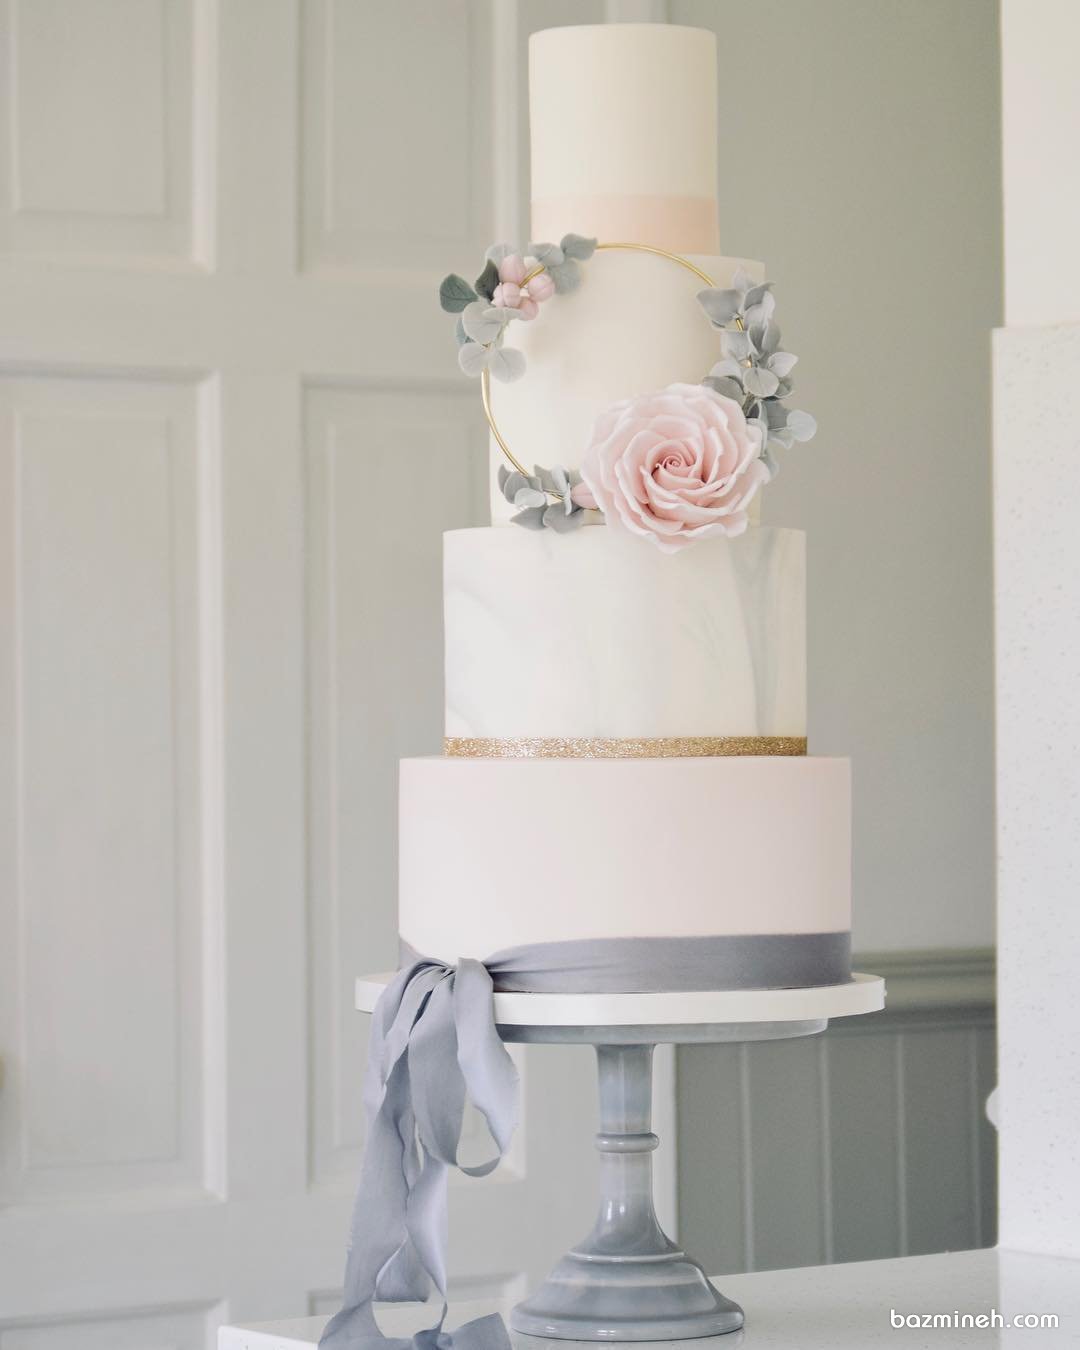 کیک چند طبقه فانتزی و رویایی جشن نامزدی یا عروسی با تم سفید طوسی صورتی تزیین شده با گل و ربان